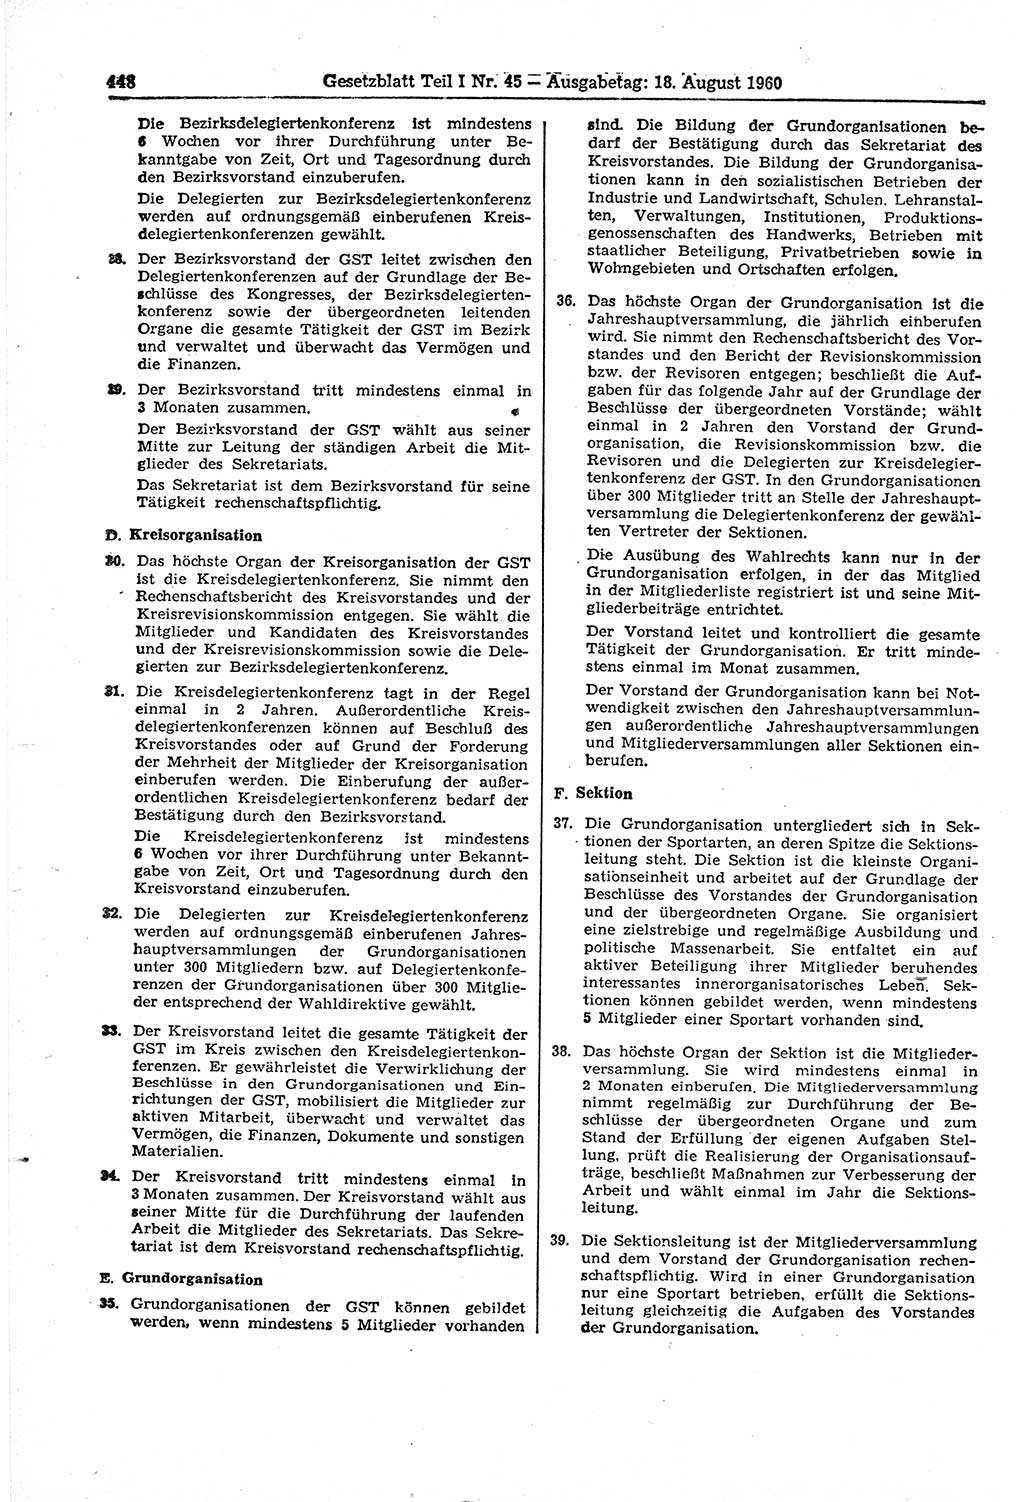 Gesetzblatt (GBl.) der Deutschen Demokratischen Republik (DDR) Teil Ⅰ 1960, Seite 448 (GBl. DDR Ⅰ 1960, S. 448)